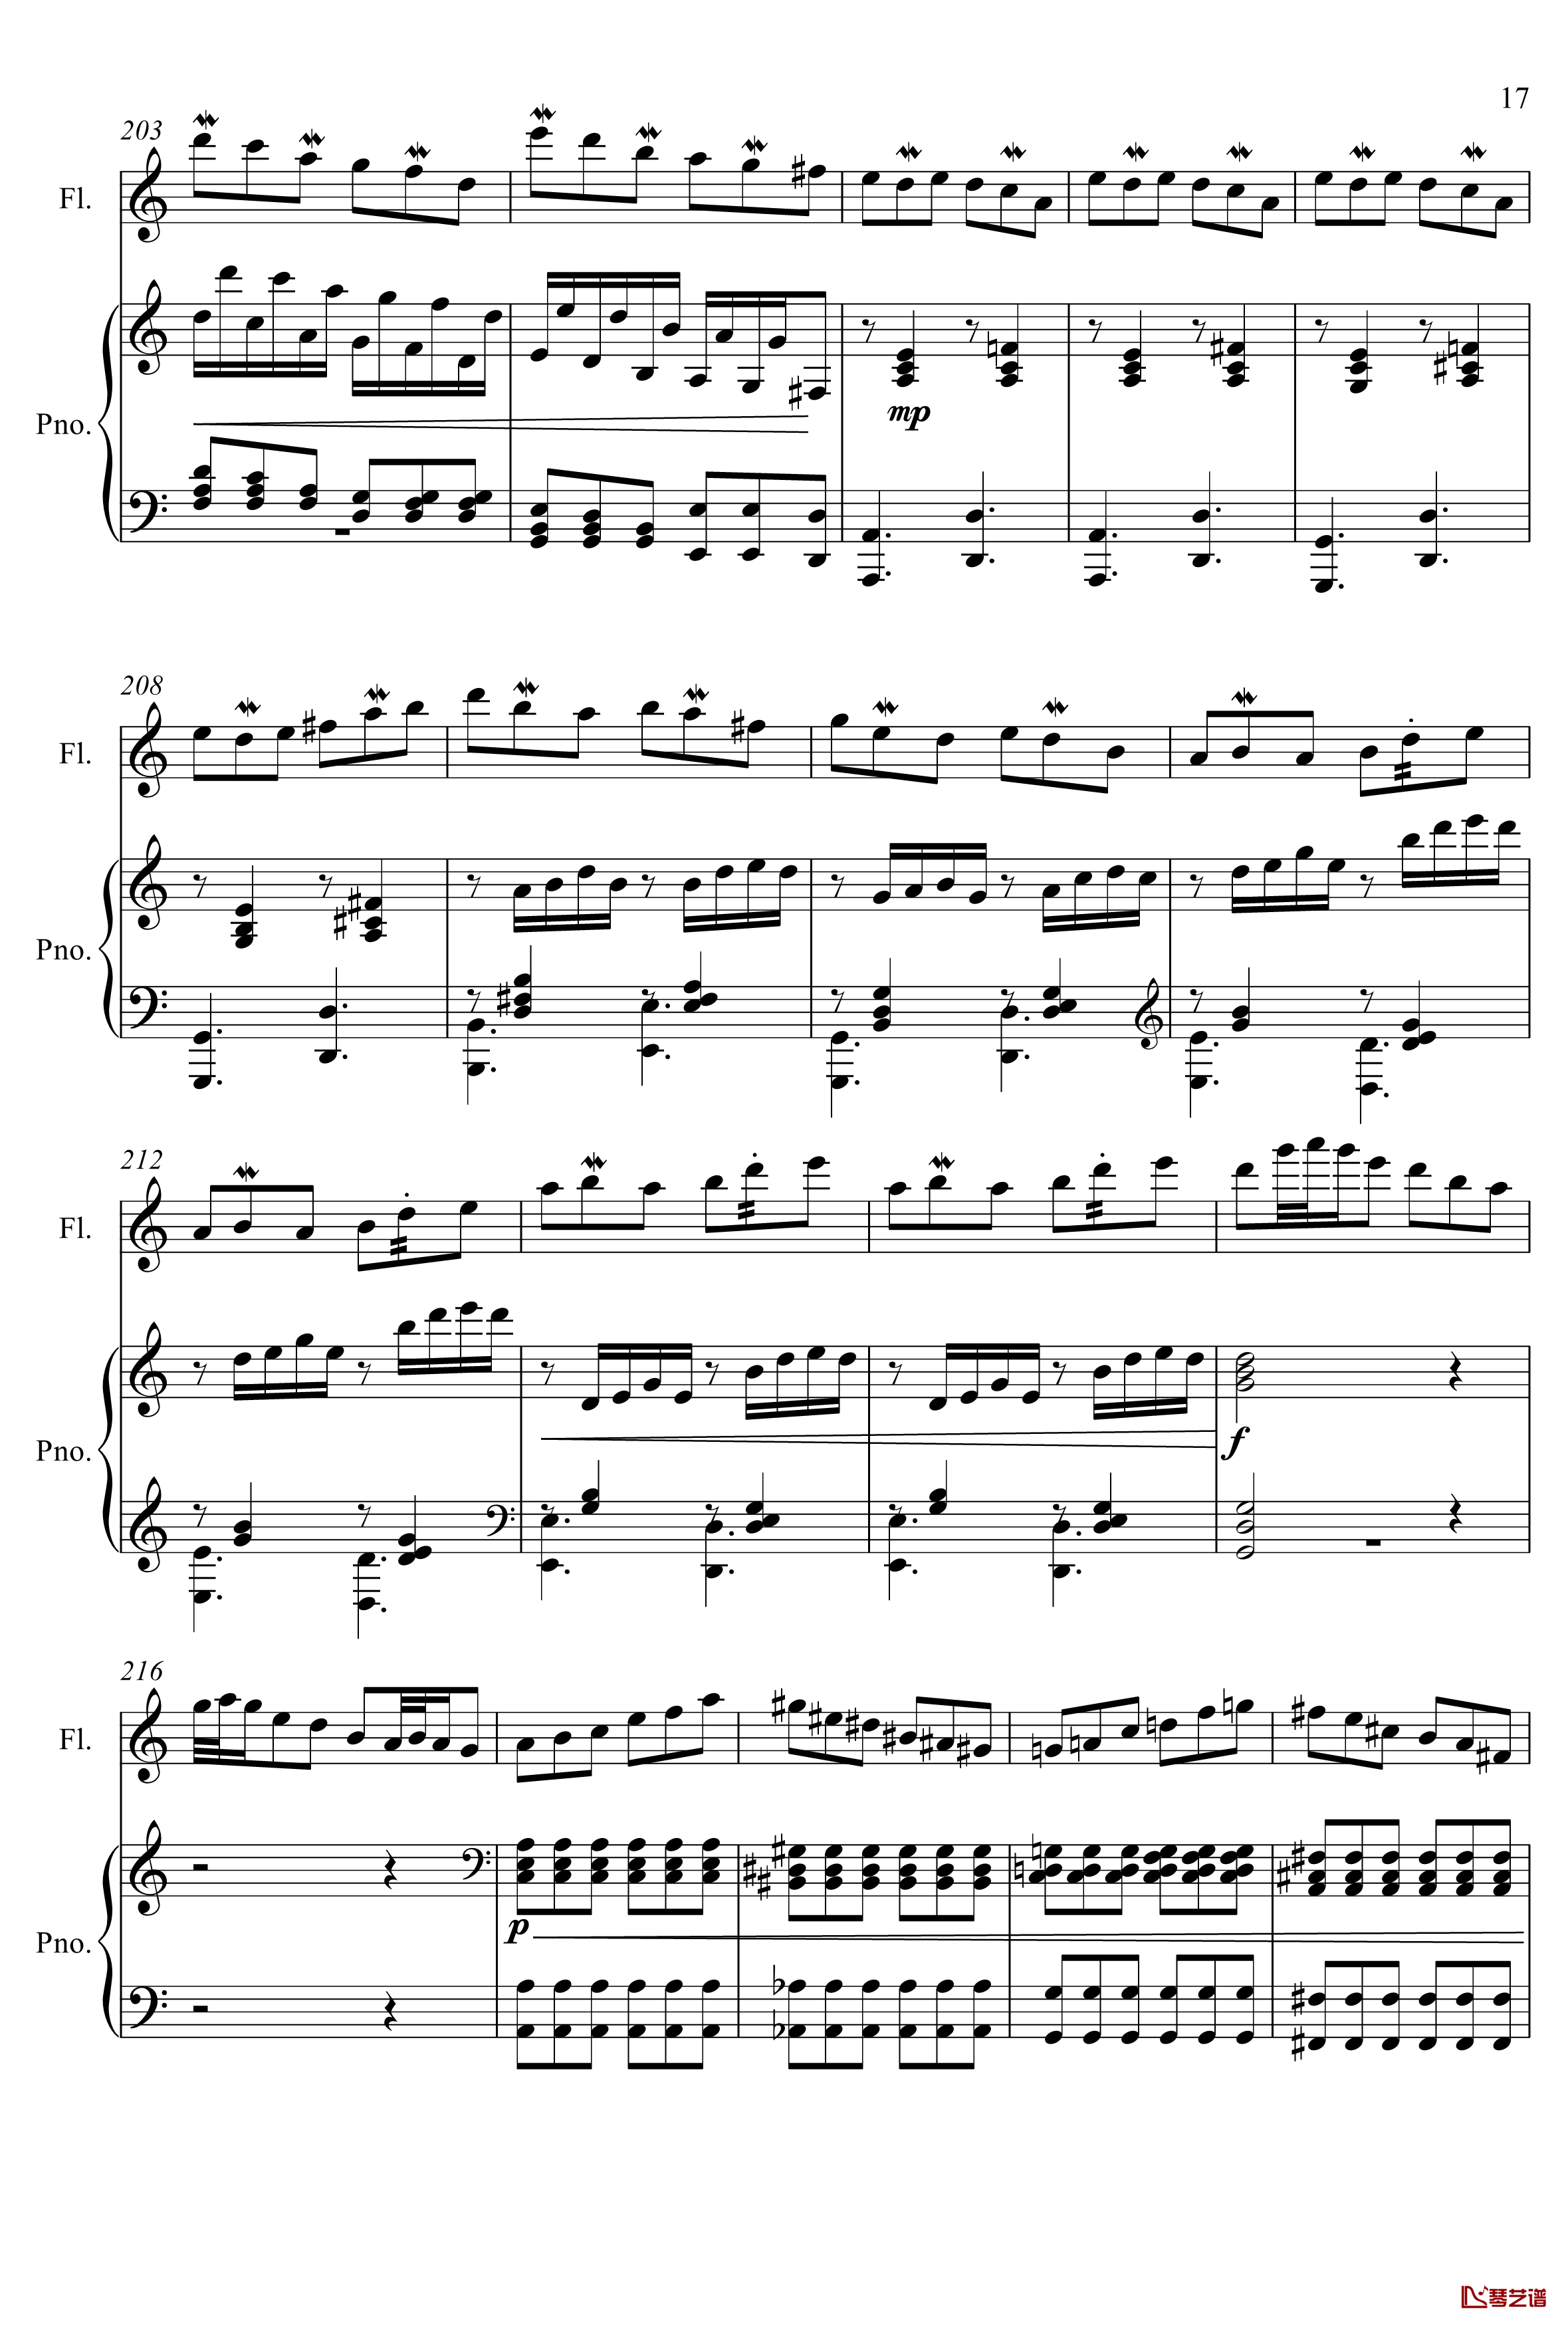 即兴曲3钢琴谱-yewwc17